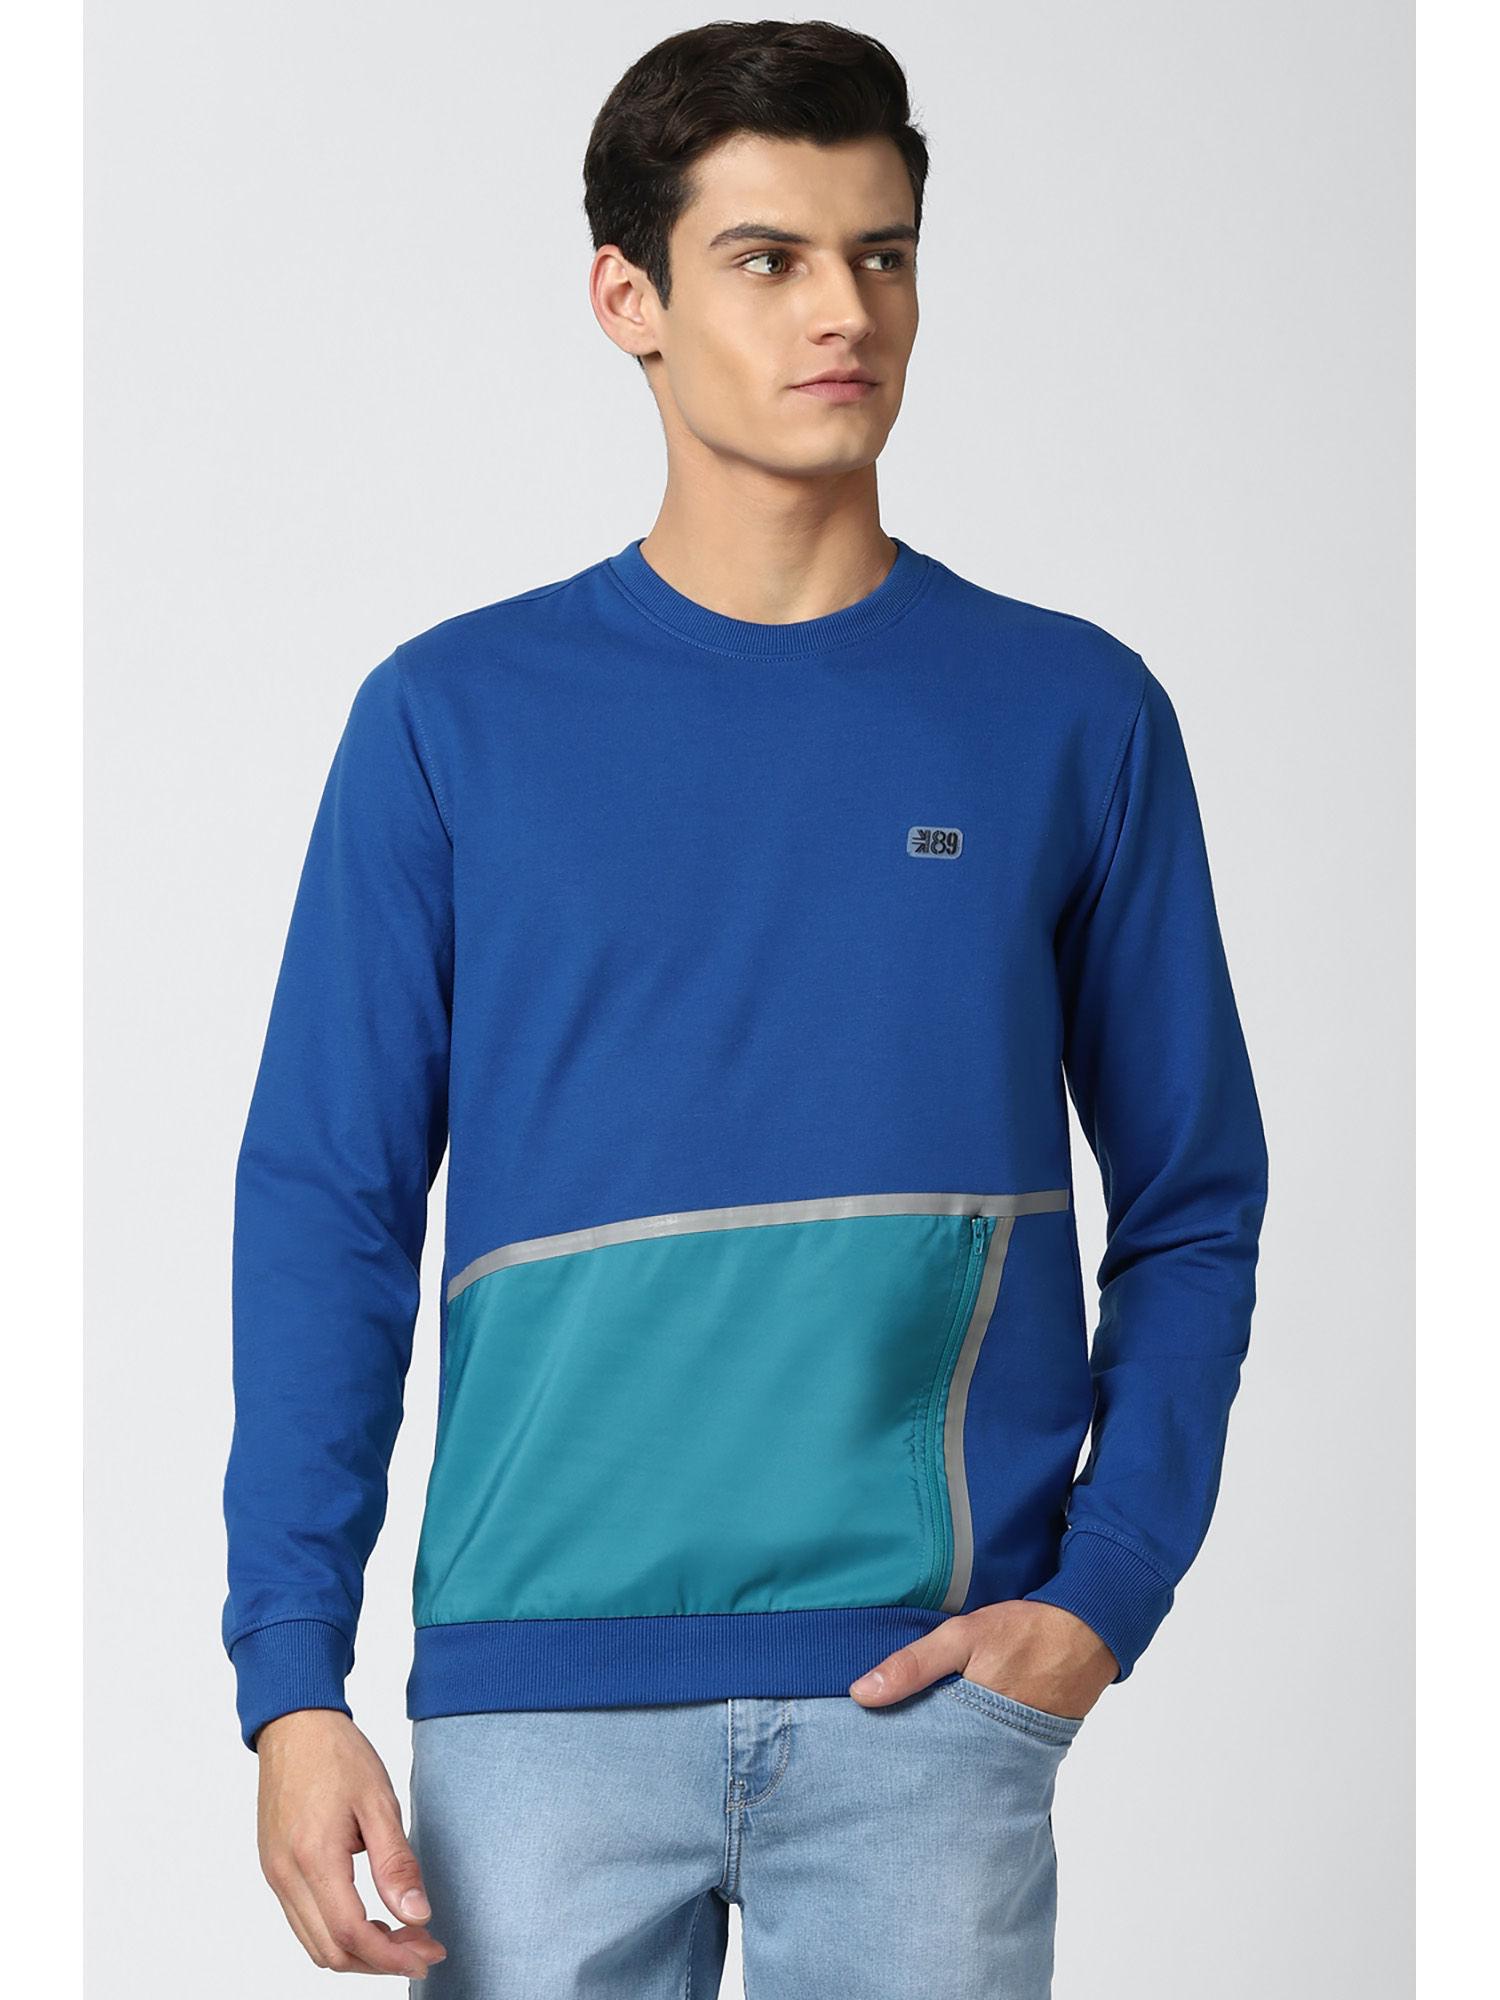 men blue sweatshirt